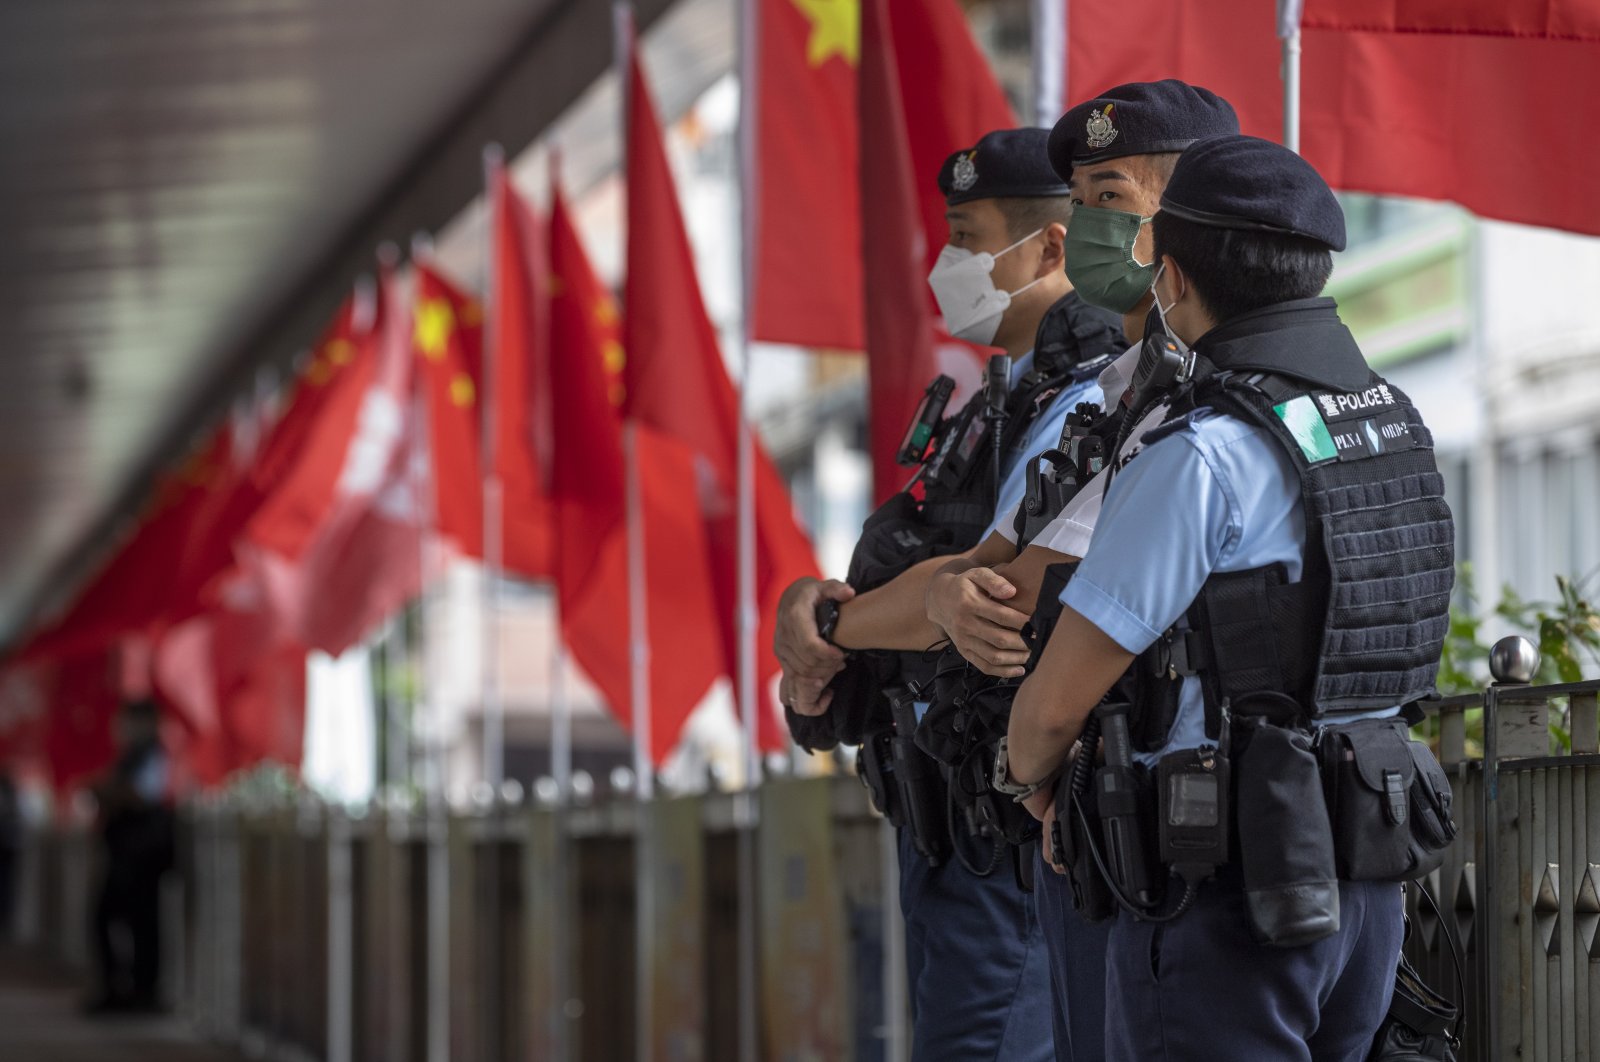 Pembawa acara radio online Hong Kong dipenjara karena siaran ‘hasut’